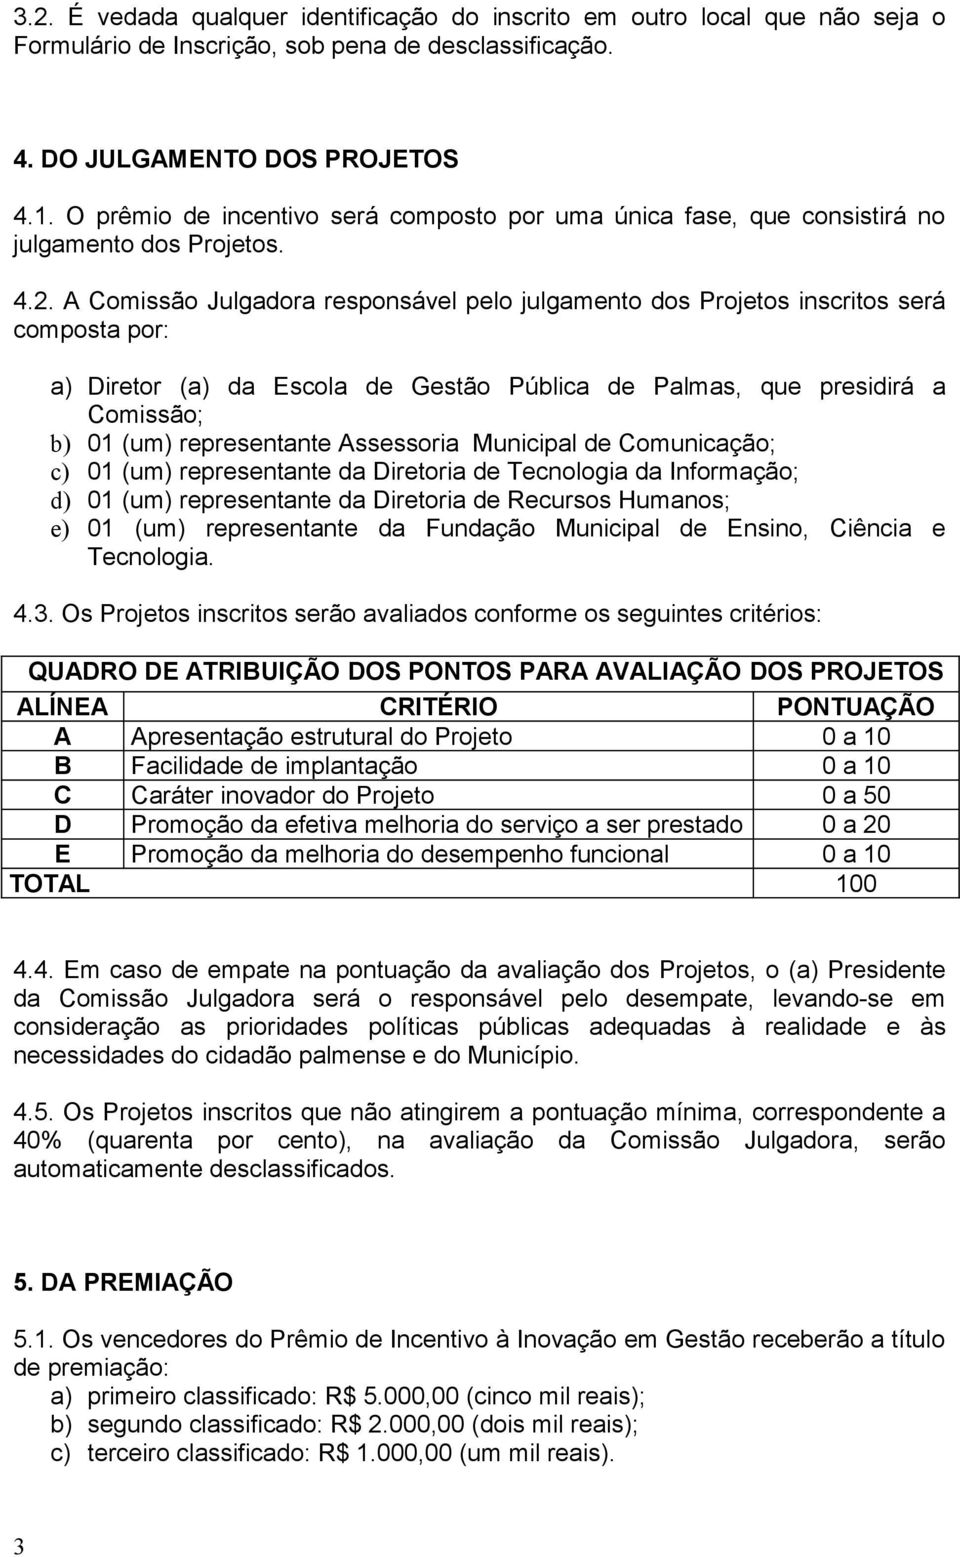 A Comissão Julgadora responsável pelo julgamento dos Projetos inscritos será composta por: a) Diretor (a) da Escola de Gestão Pública de Palmas, que presidirá a Comissão; b) 01 (um) representante